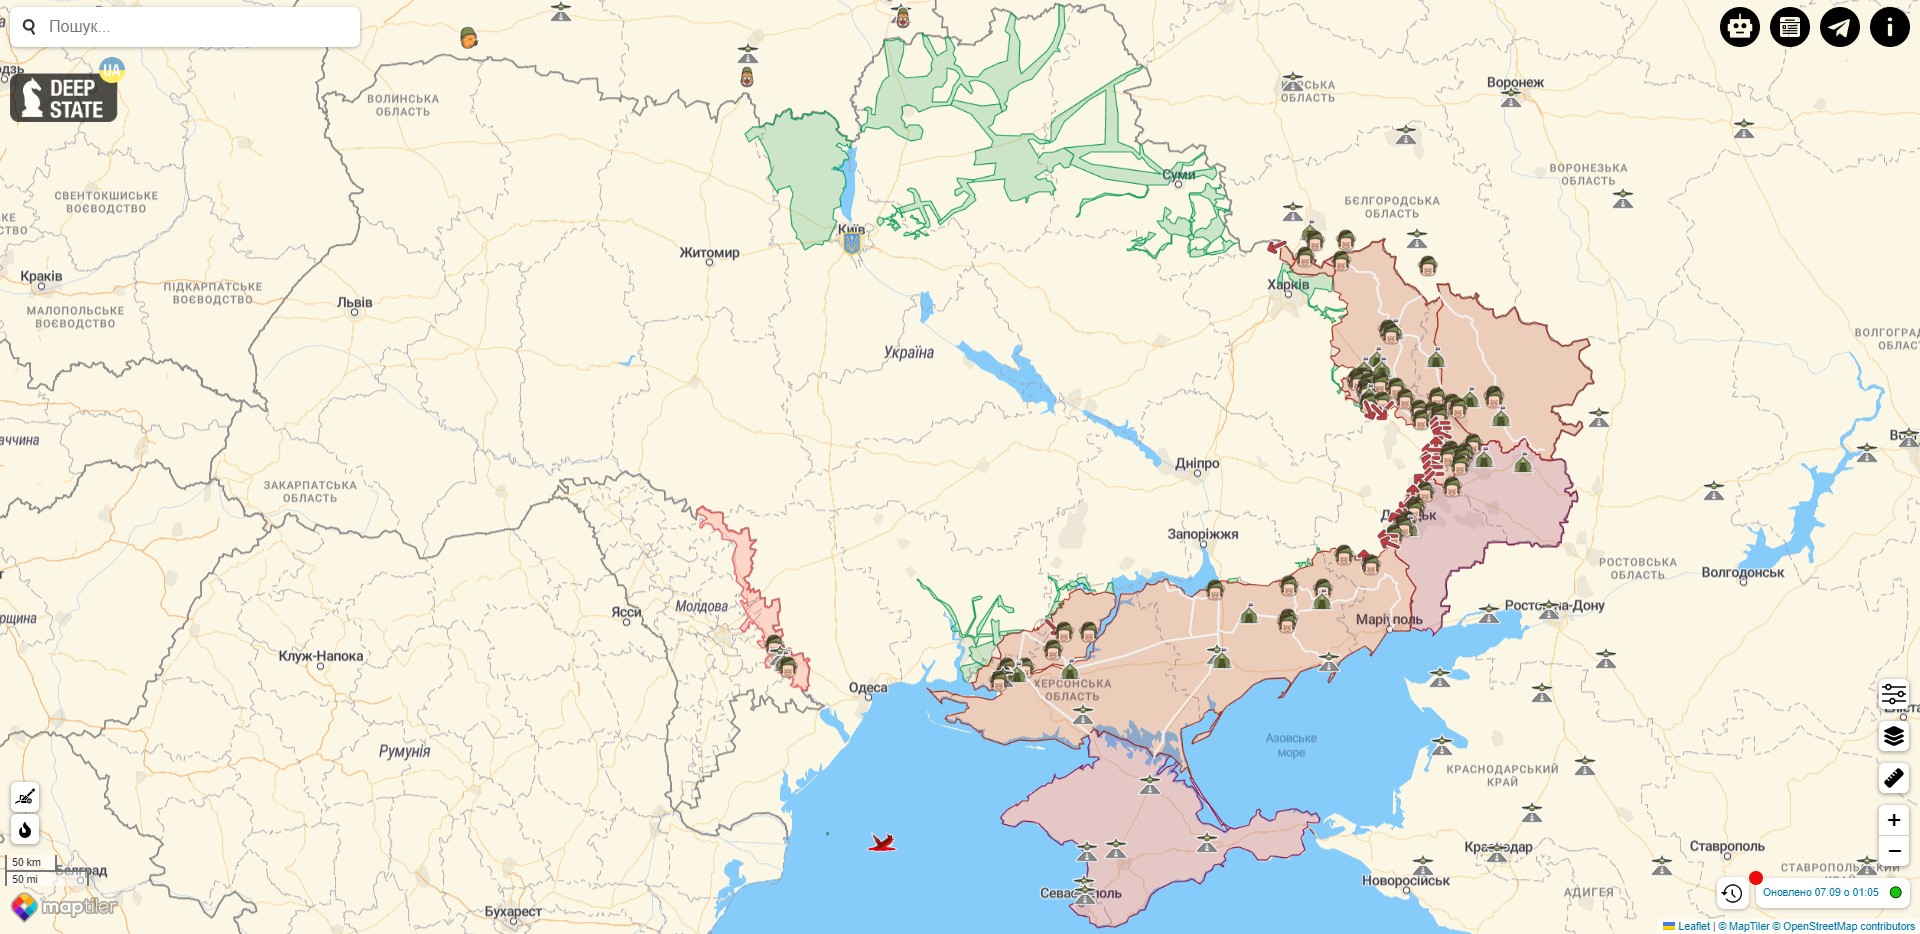 Бойові дії України на 7 вересня